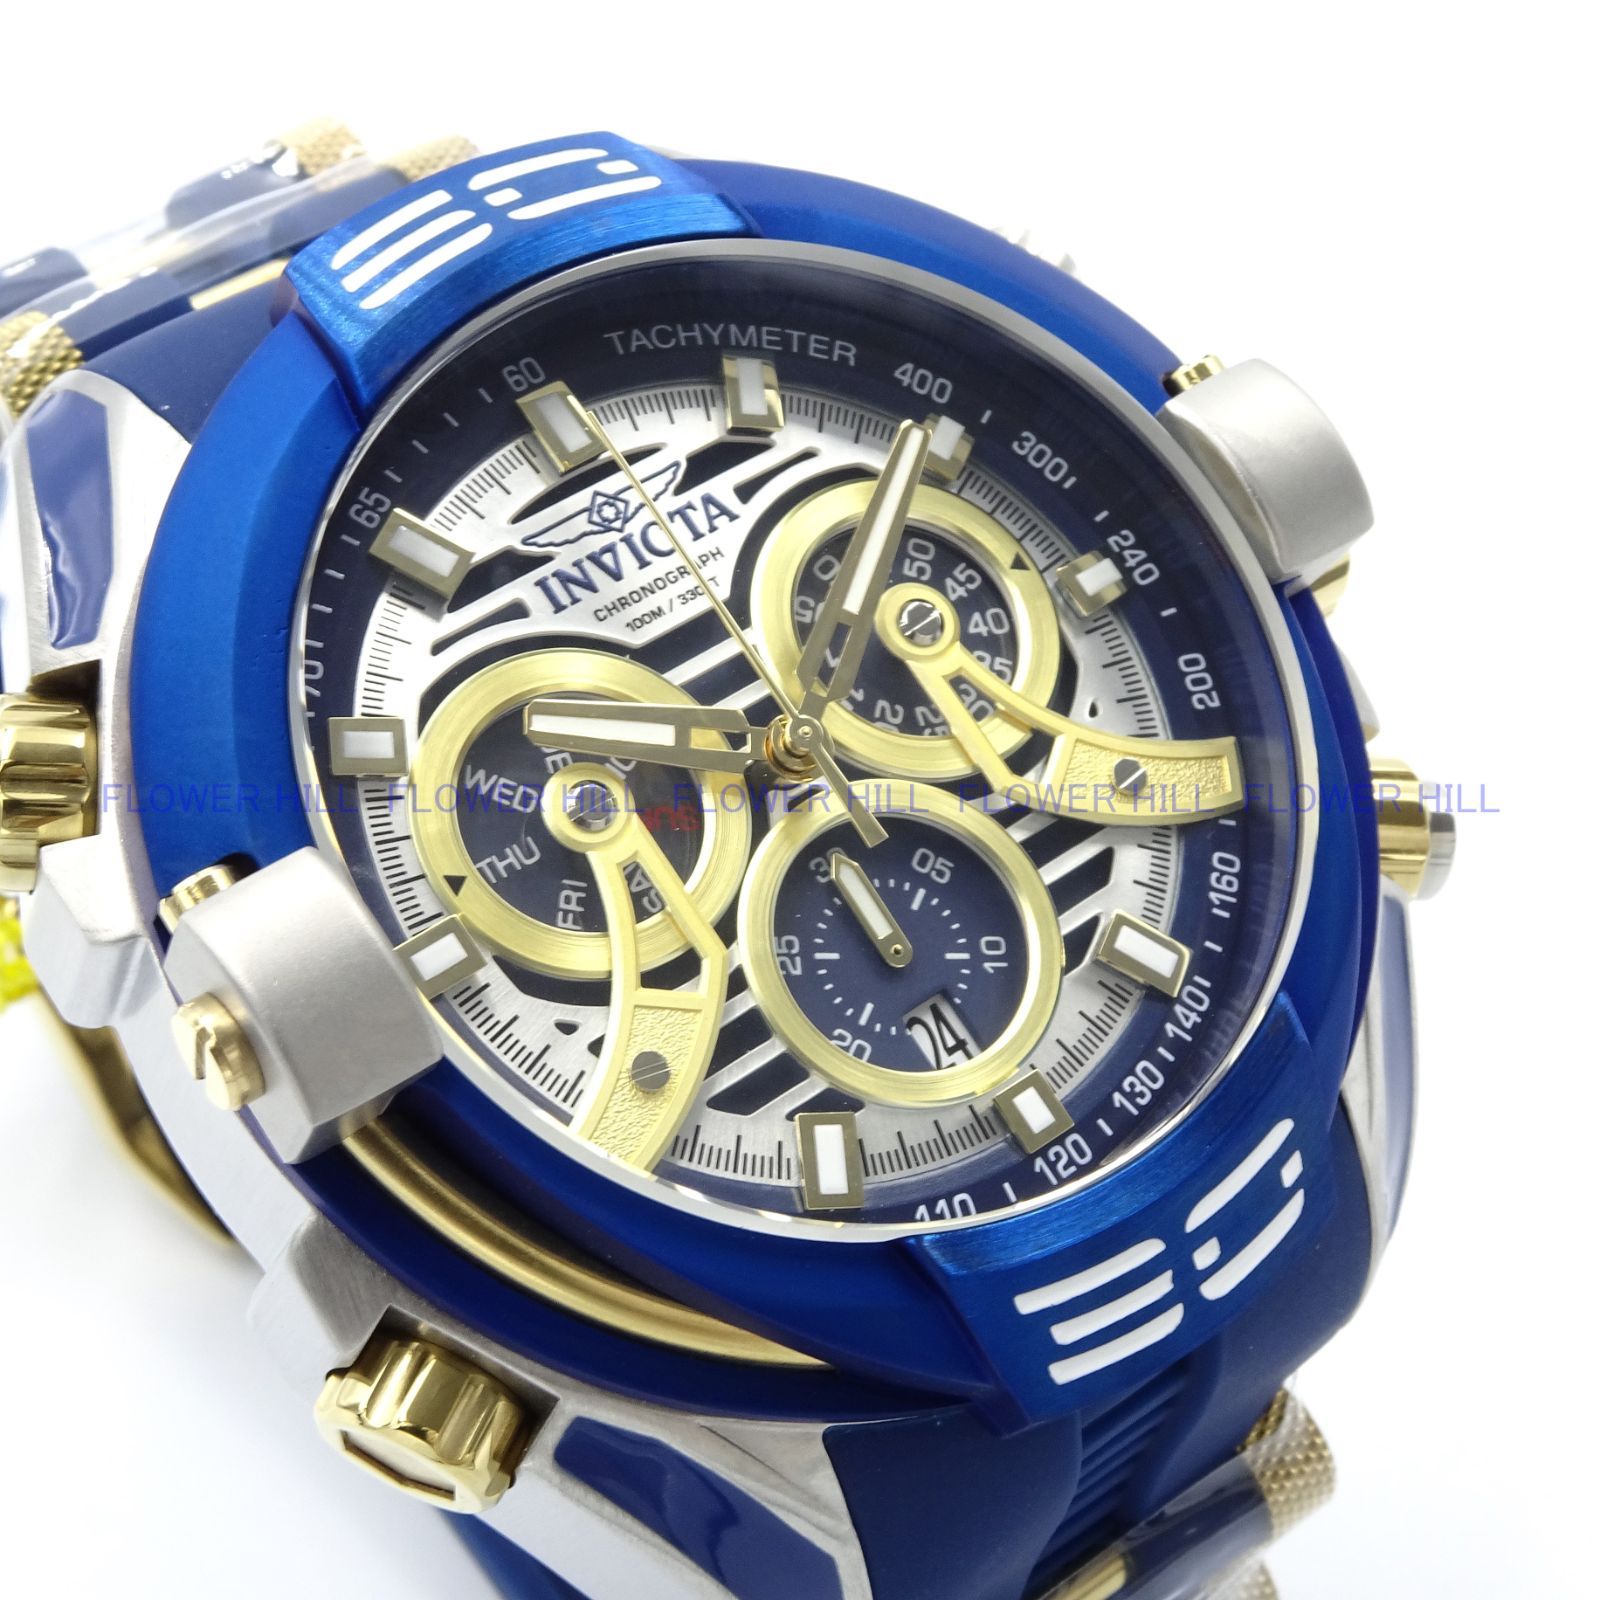 INVICTA インビクタ 腕時計 メンズ クォーツ スイスムーブメント S1 RALLY 37531 ブルー シリコンバンド